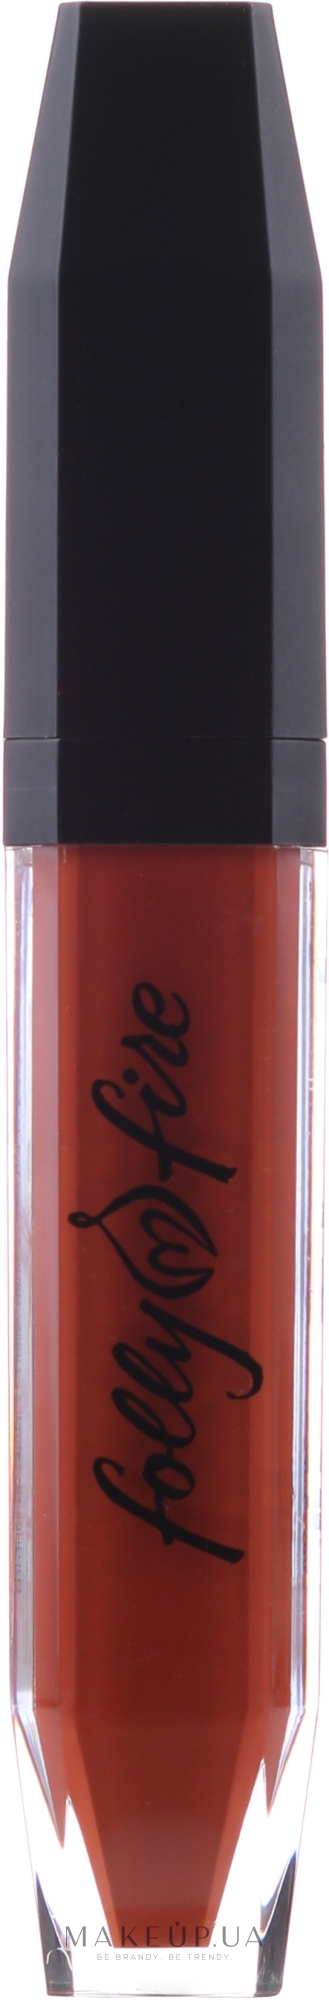 Рідка матова помада для губ - Folly Fire Long-Lasting Matte Liquid Lipstick — фото Booty Call